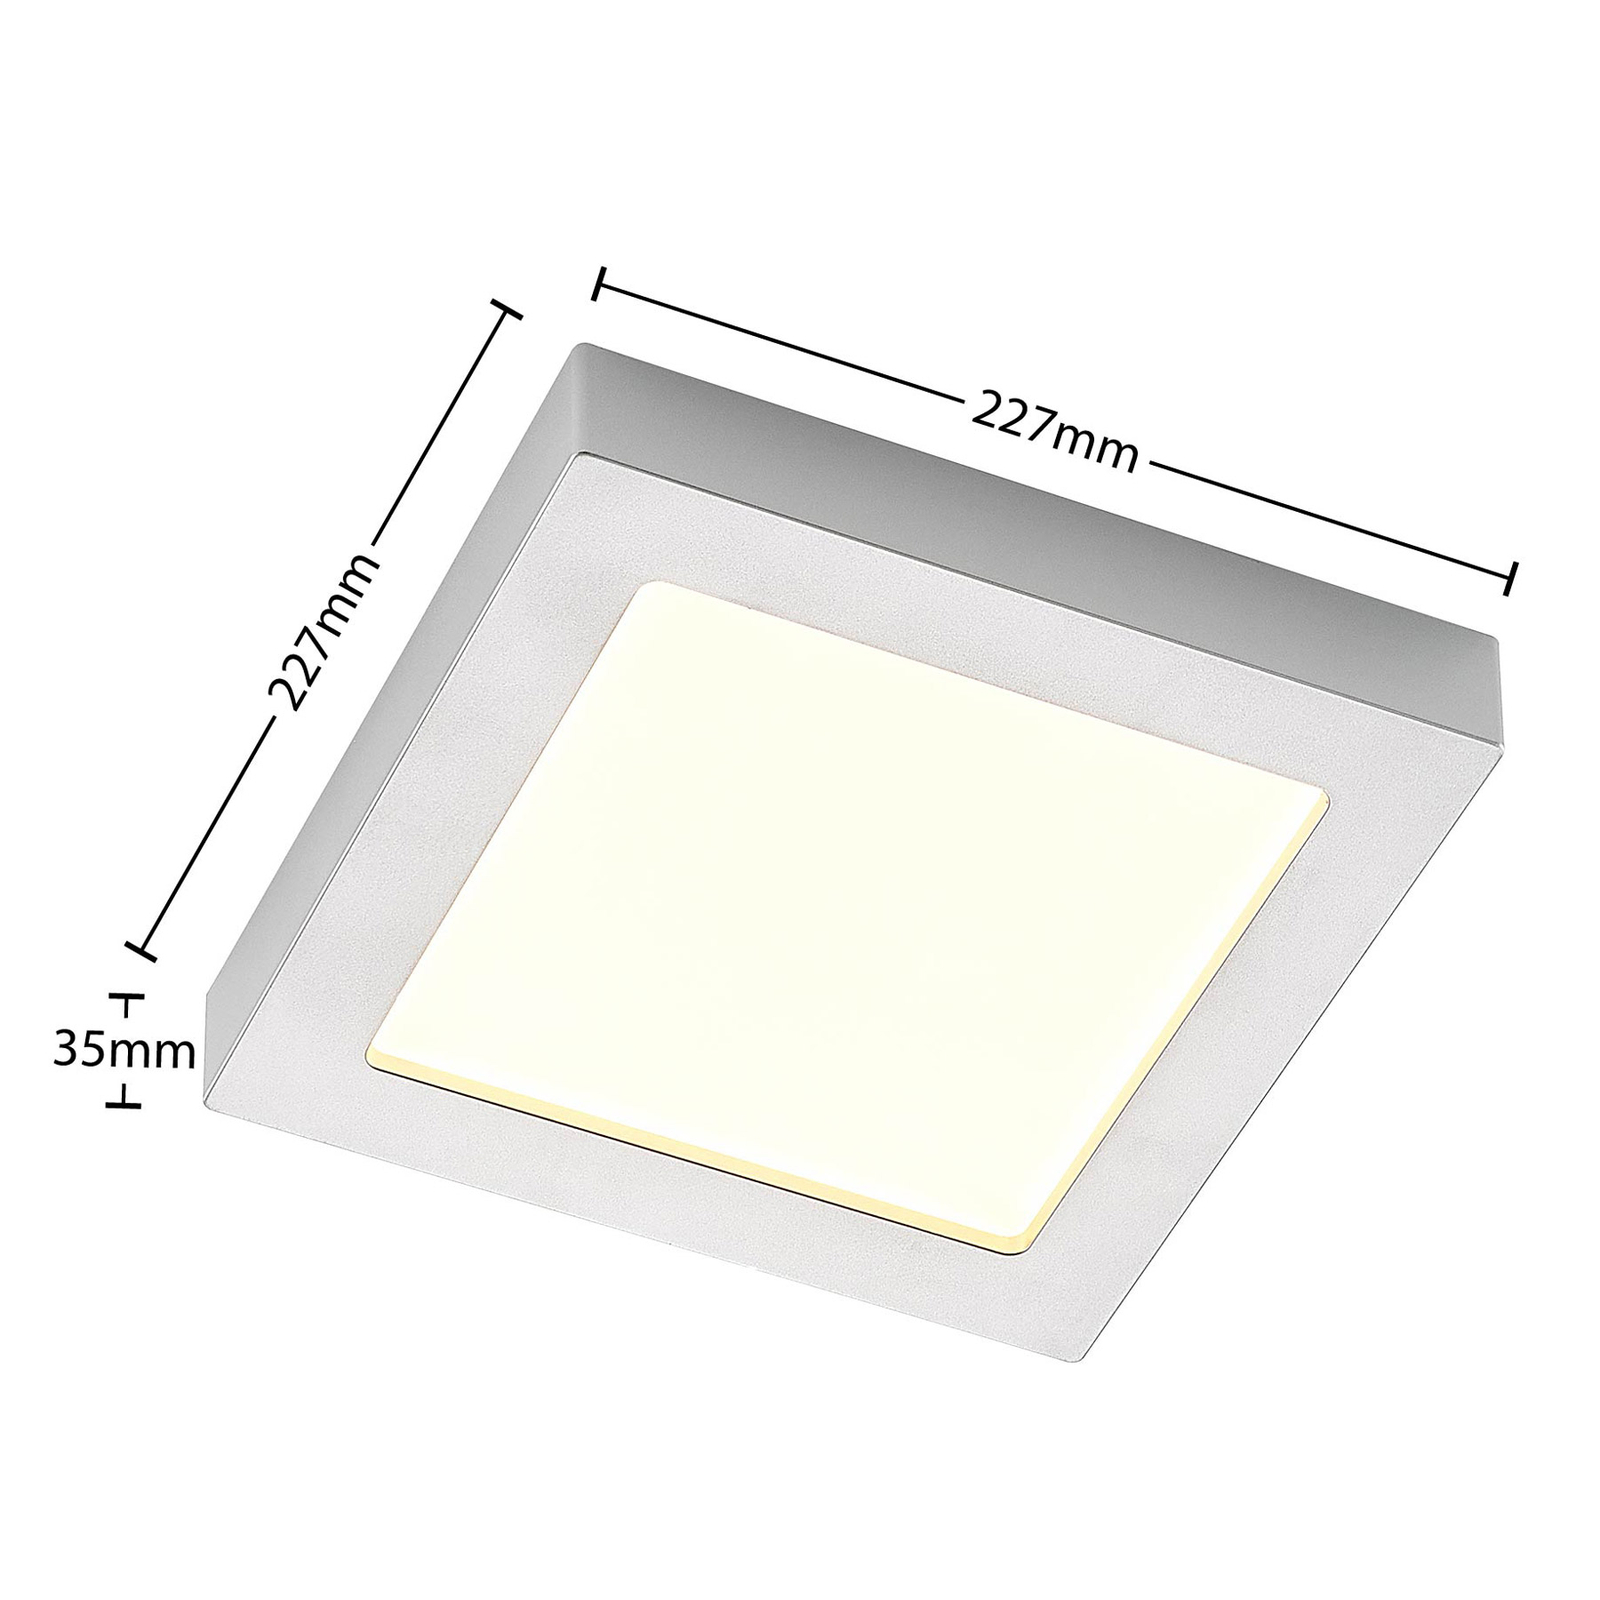 Prios Plafonnier LED Alette, argent, 22,7cm, 24W, intensité variable